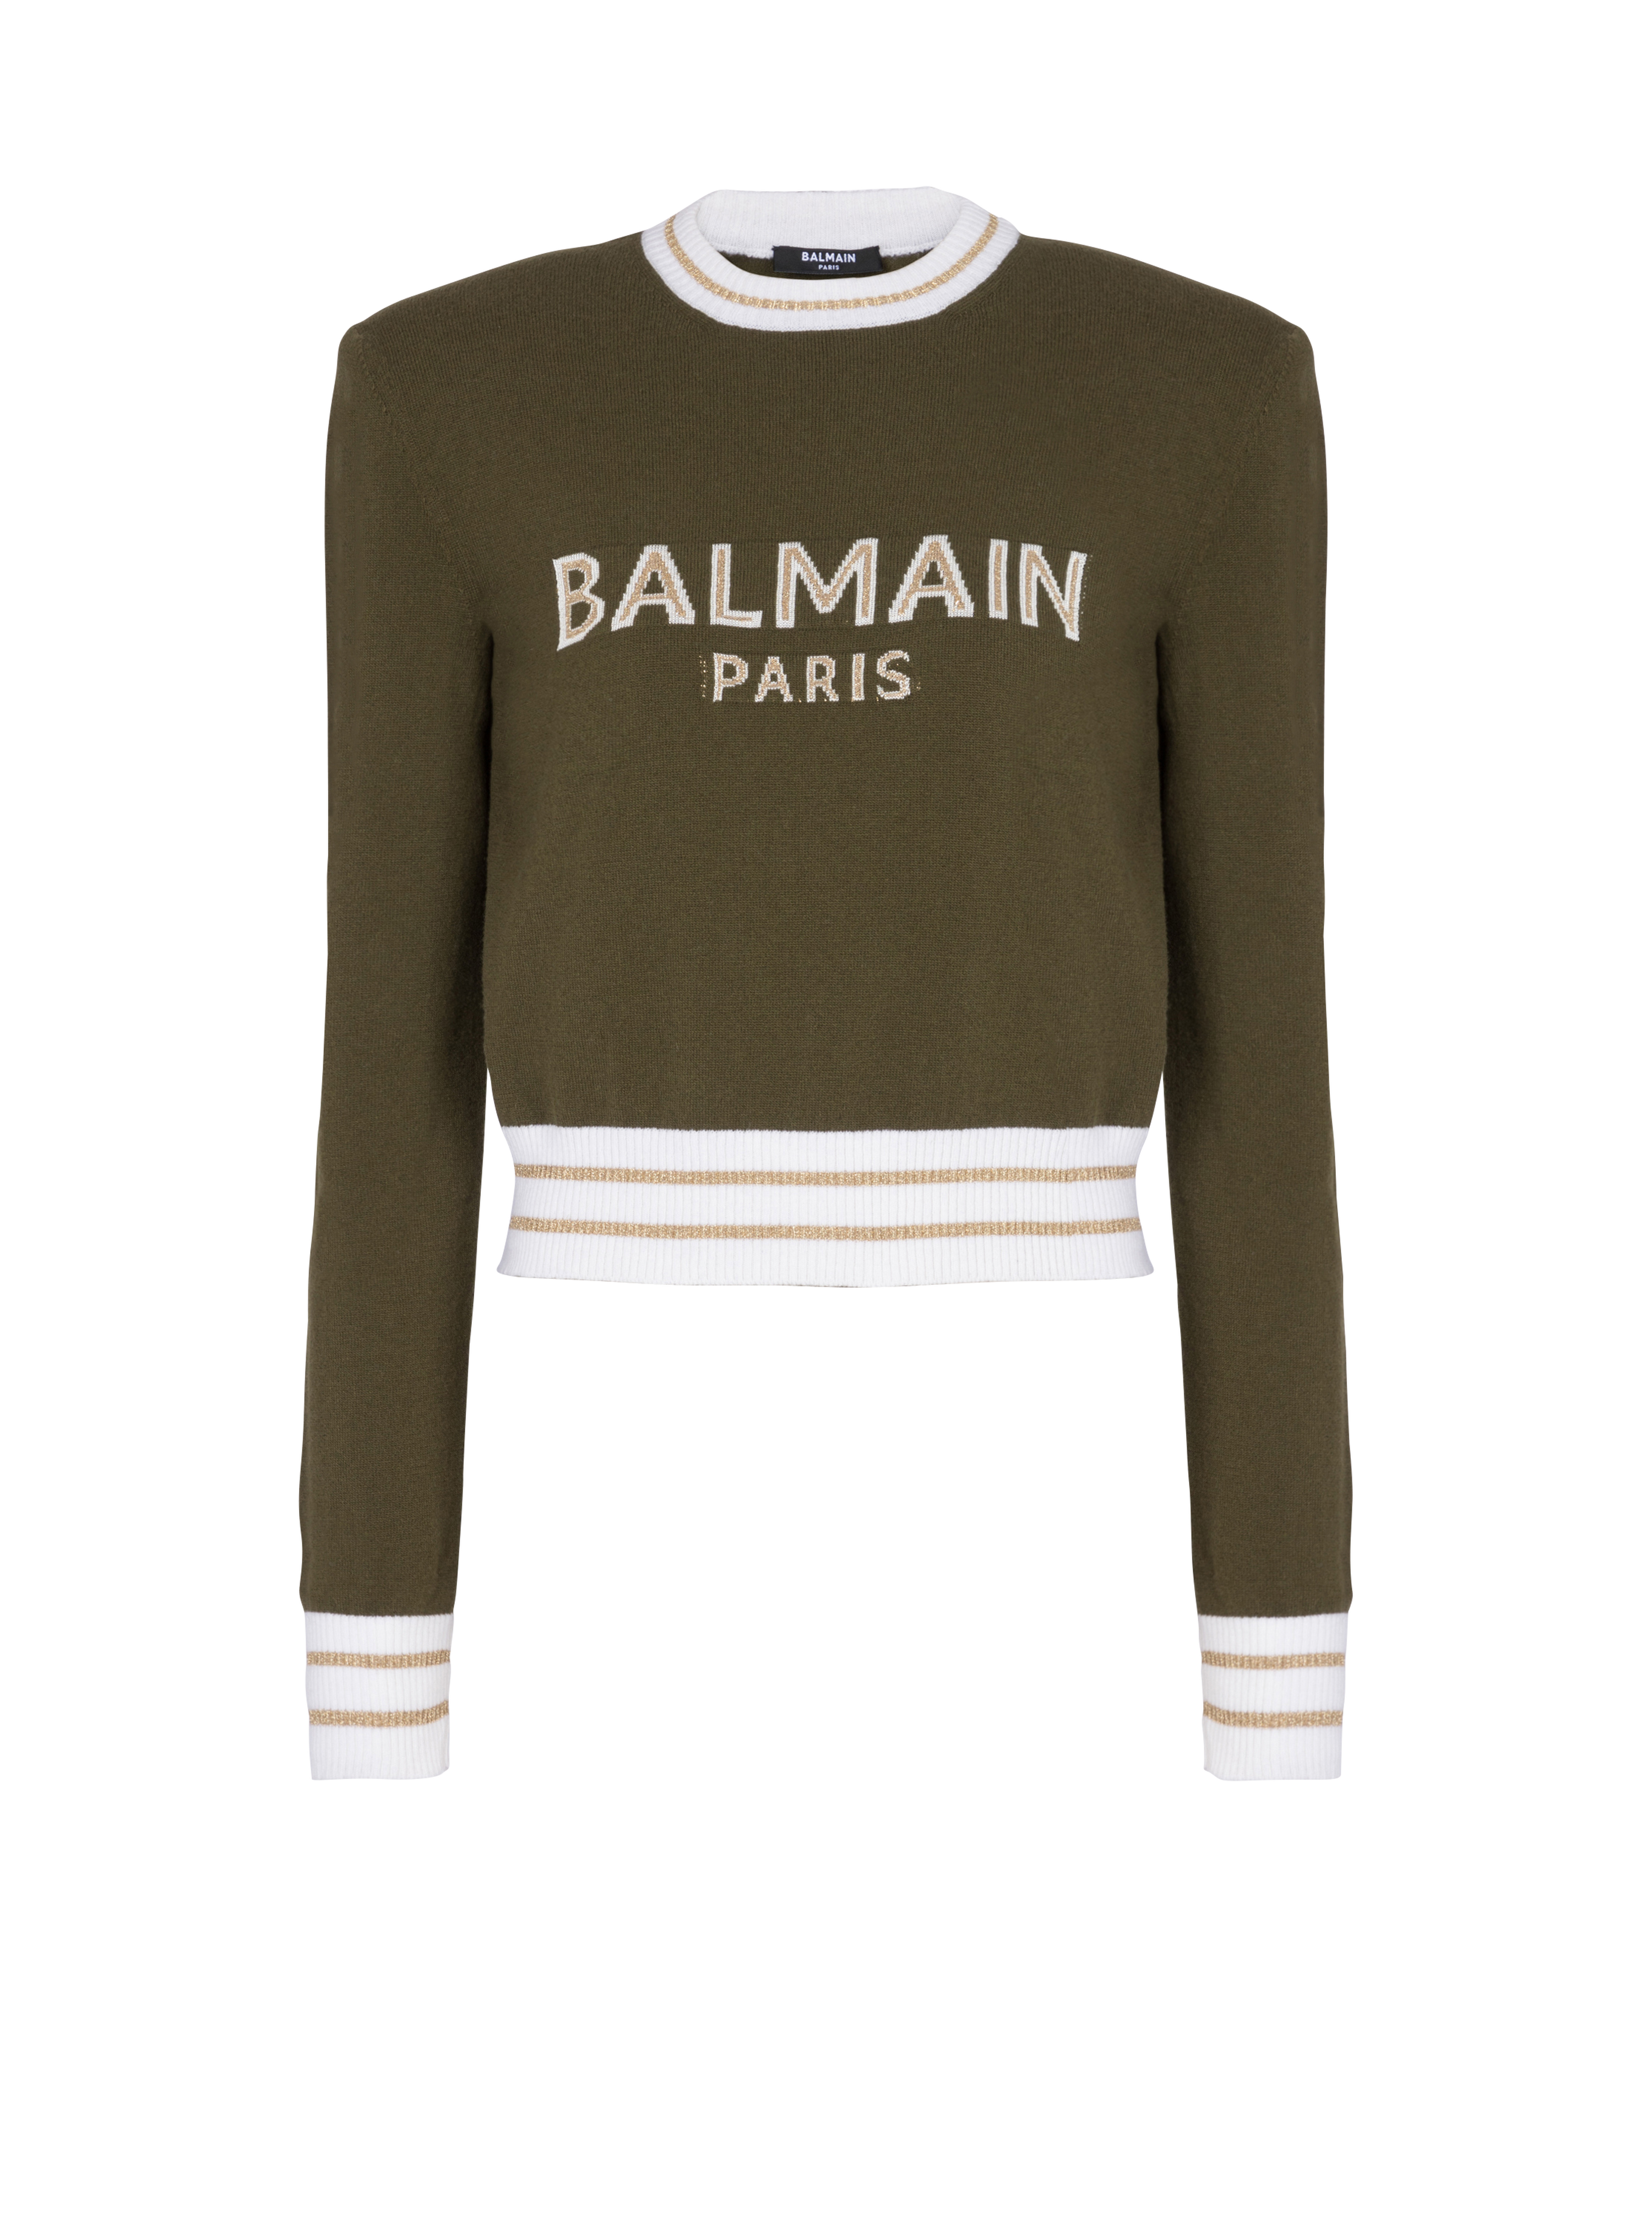 Balmain巴尔曼标志短款羊毛运动衫, khaki